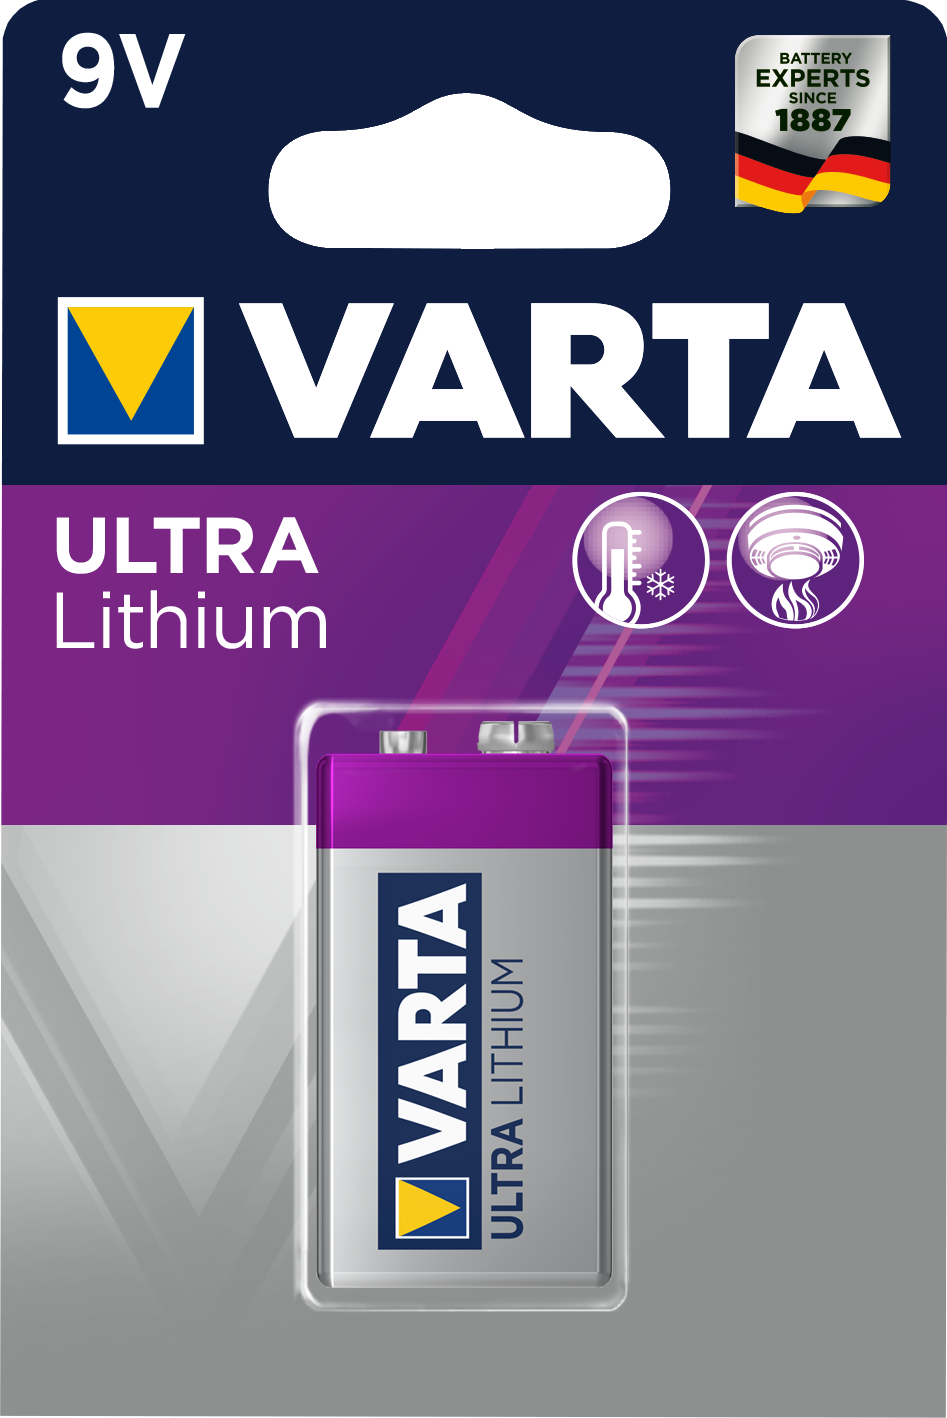 Ultra Lithium Batterie von Varta.